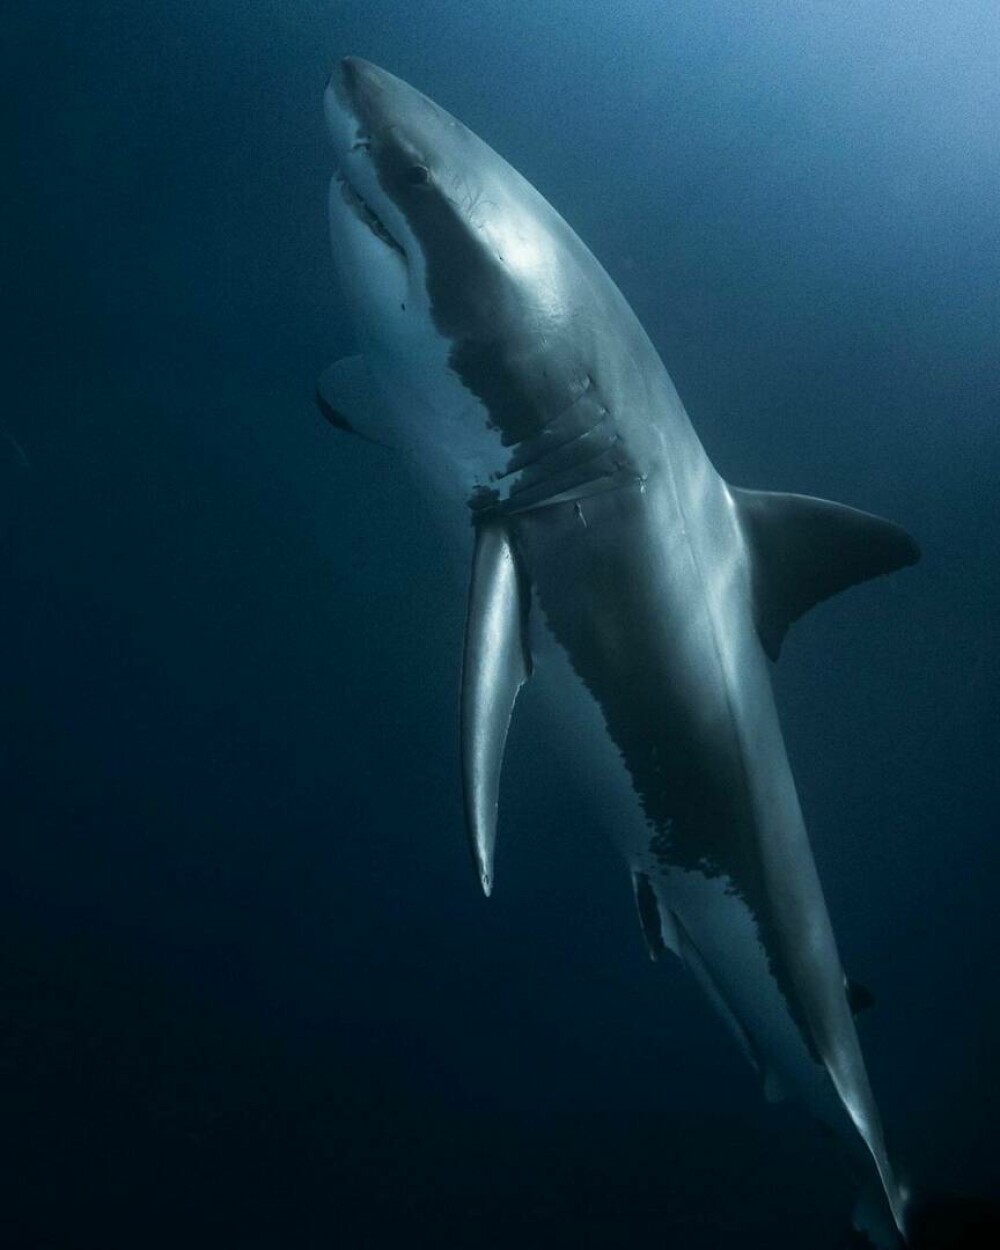 Imagini uimitoare surprinse de supraviețuitorul atacului unui rechin. Fotografiază prădătorii de aproape | GALERIE FOTO - Imaginea 3